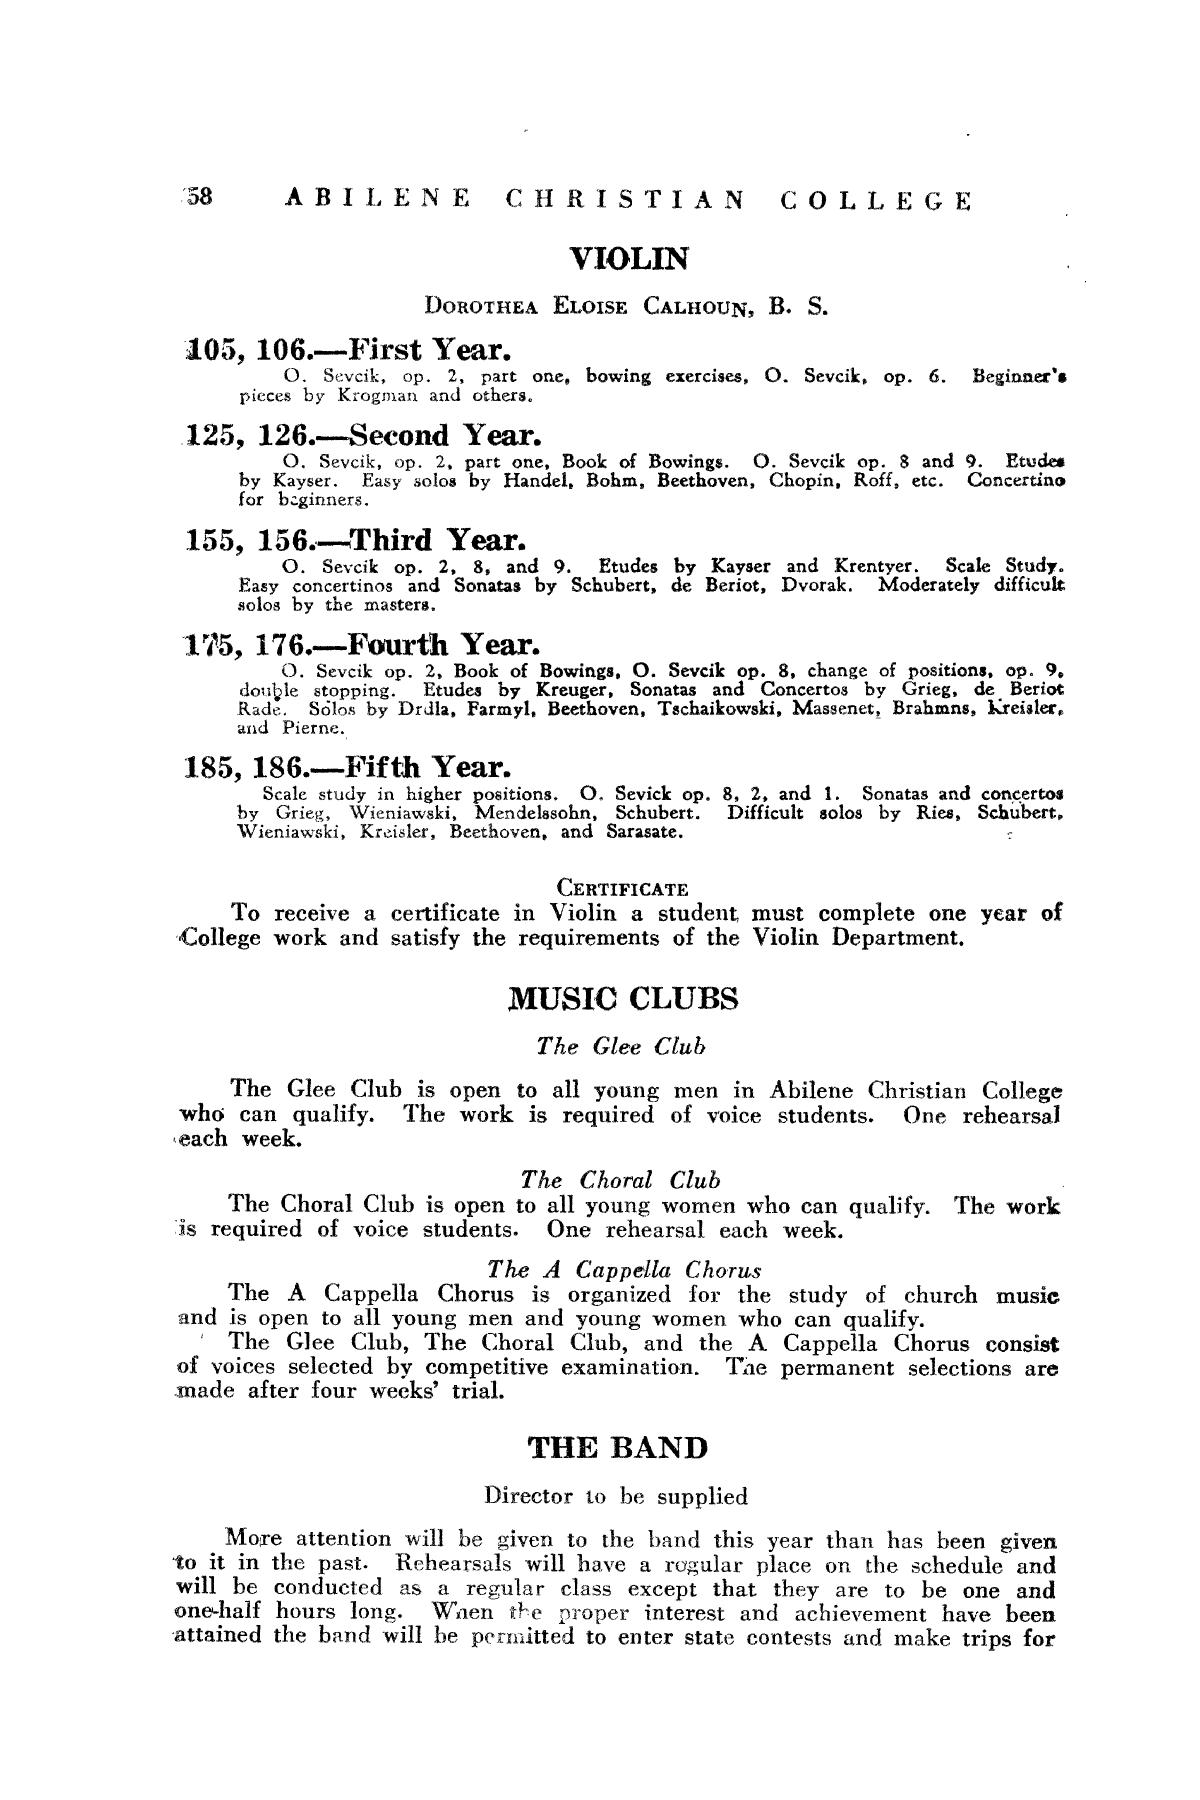 Catalog of Abilene Christian College, 1934-1935
                                                
                                                    58
                                                